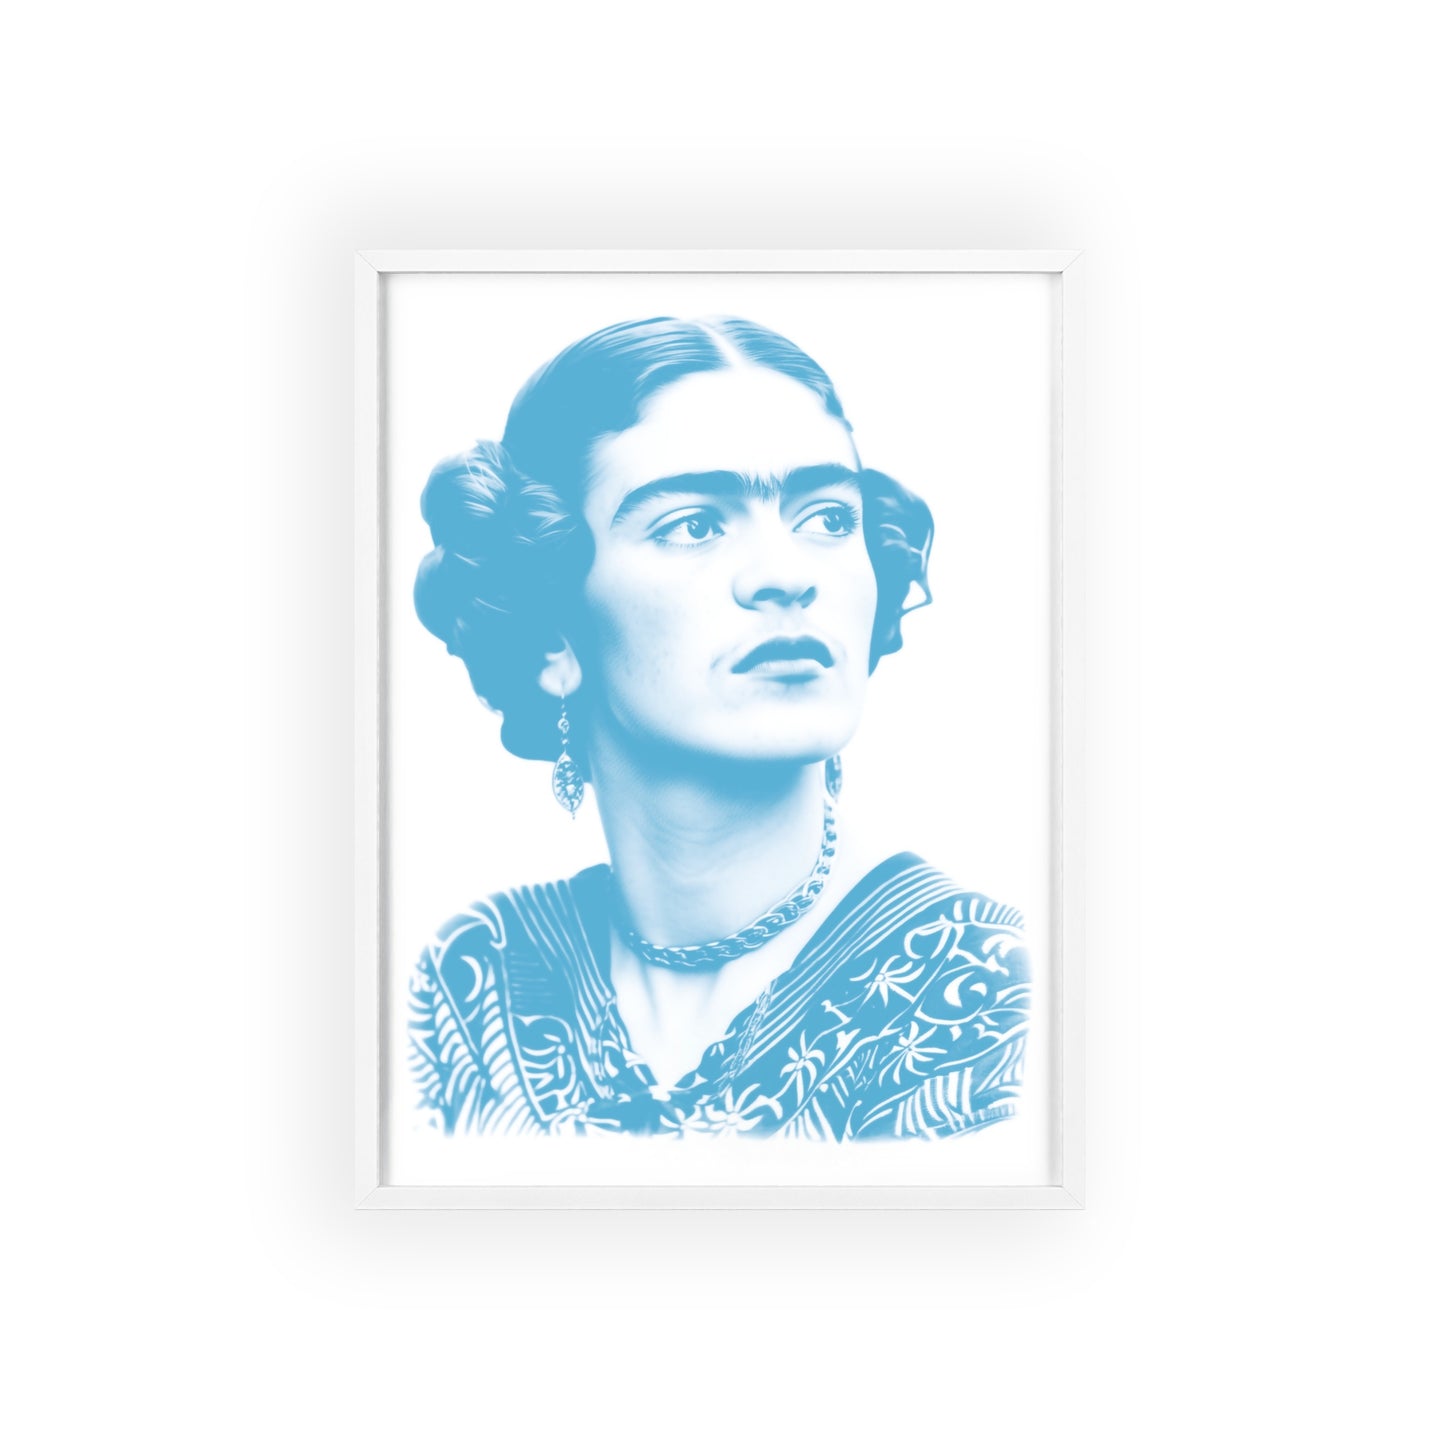 Frida en cyan - Portrait